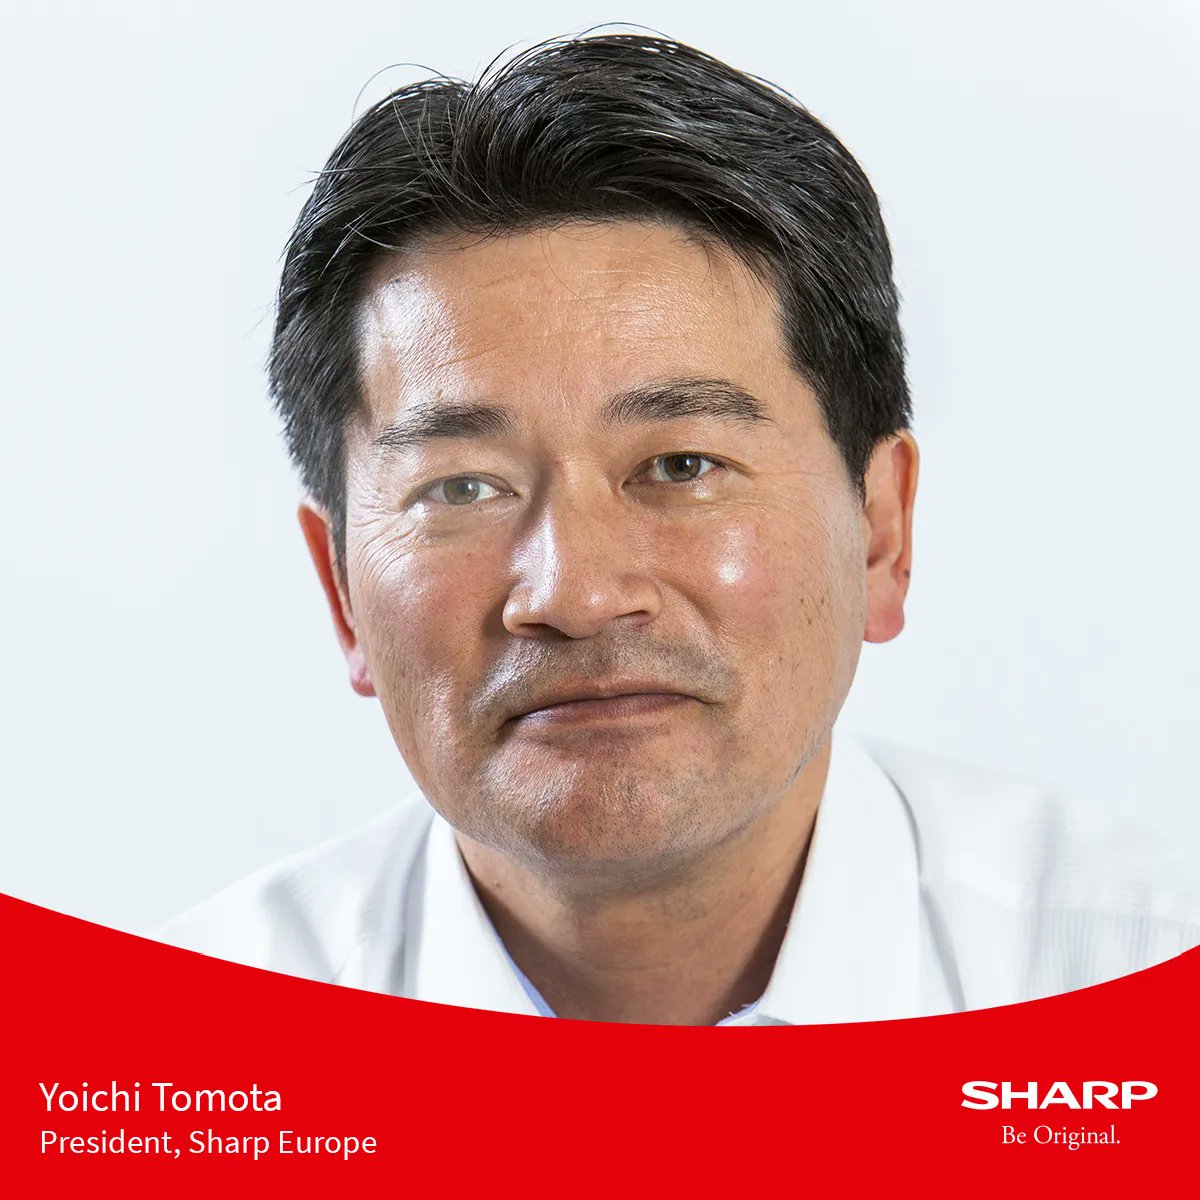 .@Sharp_Europe nombra presidente a Yoichi Tomota. 'Soy un apasionado de cómo la #innovación y la #tecnología aportan constantemente un nuevo valor a las empresas. Estoy deseando traer al #mercado nuevos #productos y #servicios que logren este objetivo' ▶️ n9.cl/wlk66